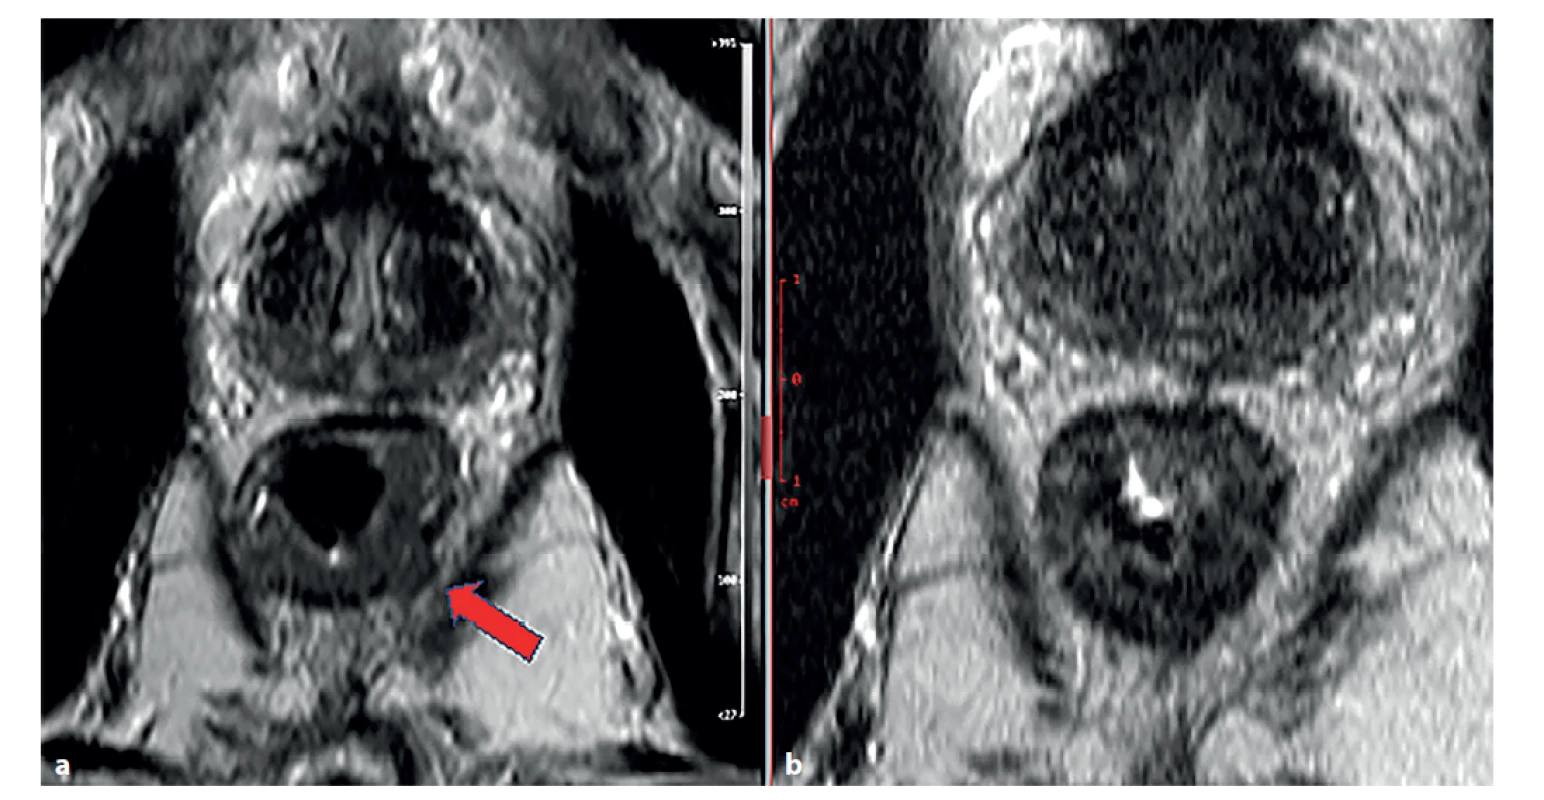 Magnetická rezonance rekta, T2 vážené obrazy v šikmé axiální rovině<br>
a) stagingové vyšetření − známky prorůstání tumorózní tkáně (střední intenzita signálu) přes muscularis propria (šipka), obraz T3b;<br>
b) restaging po chemoradioterapii.<br>
Došlo k poklesu signálu tumorózní tkáně (známka fibrotizace), bez známek prorůstání přes muscularis propria.<br>
Fig. 1: Magnetic resonance imaging of the rectum, T2-weighted images in inclined axial plane<br>
a) staging examination − signs of tumor growth (medium signal stength) through muscularis propria (arrow), figure T3;<br>
b) restaging imaging after chemoradiotherapy.<br>
Decrease in tumor tissue signal (sign of fibrotization), without signs of tumor growth through muscularis propria.